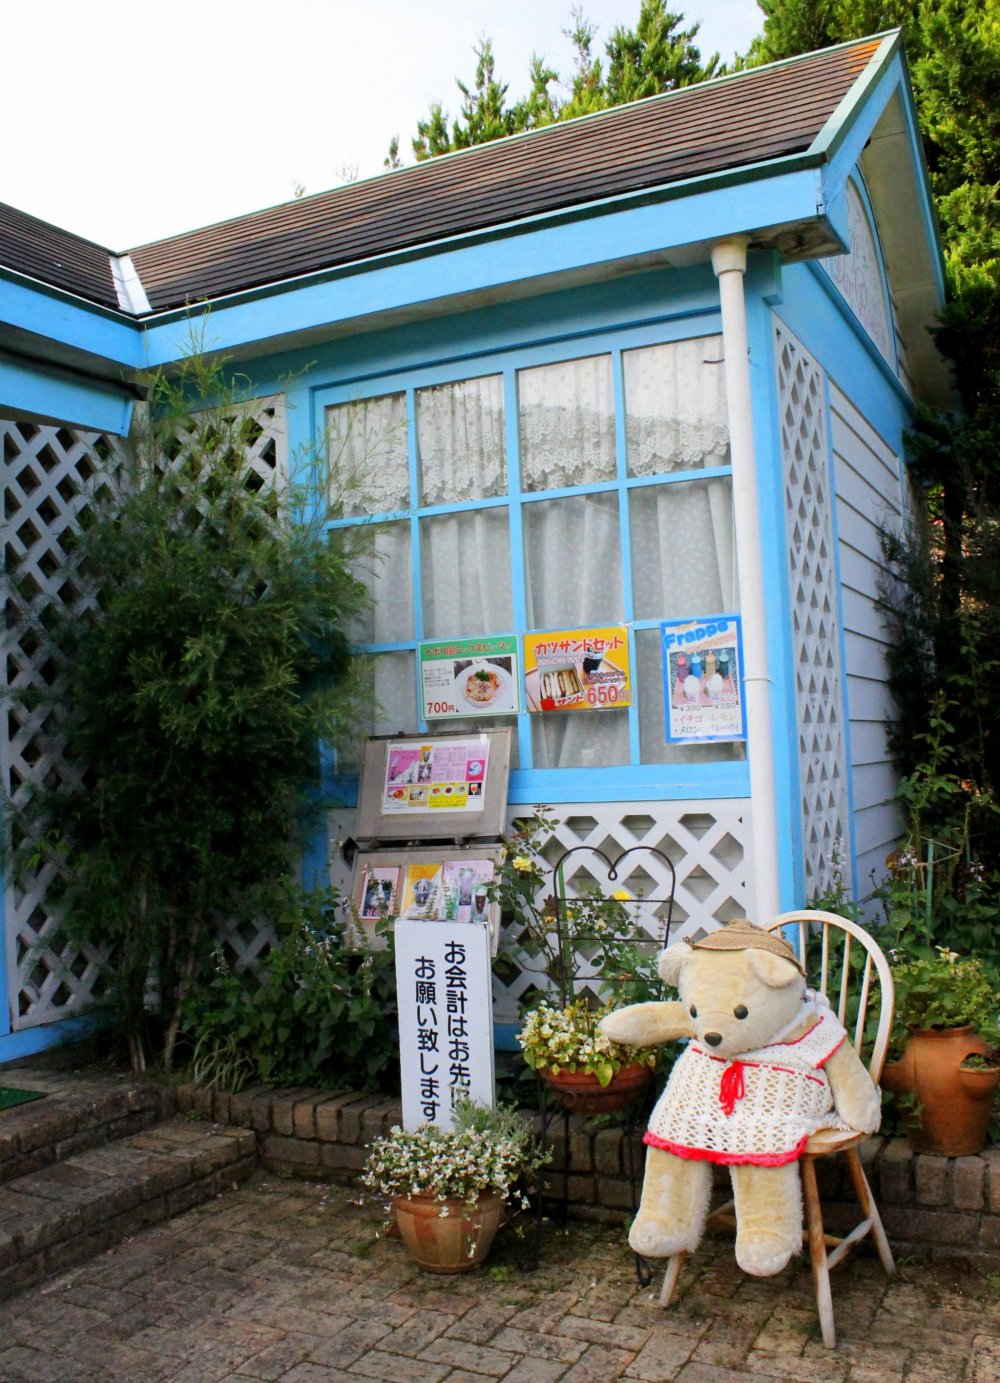 Uma avózinha ursa gira guarda a casinha no jardim de rosas